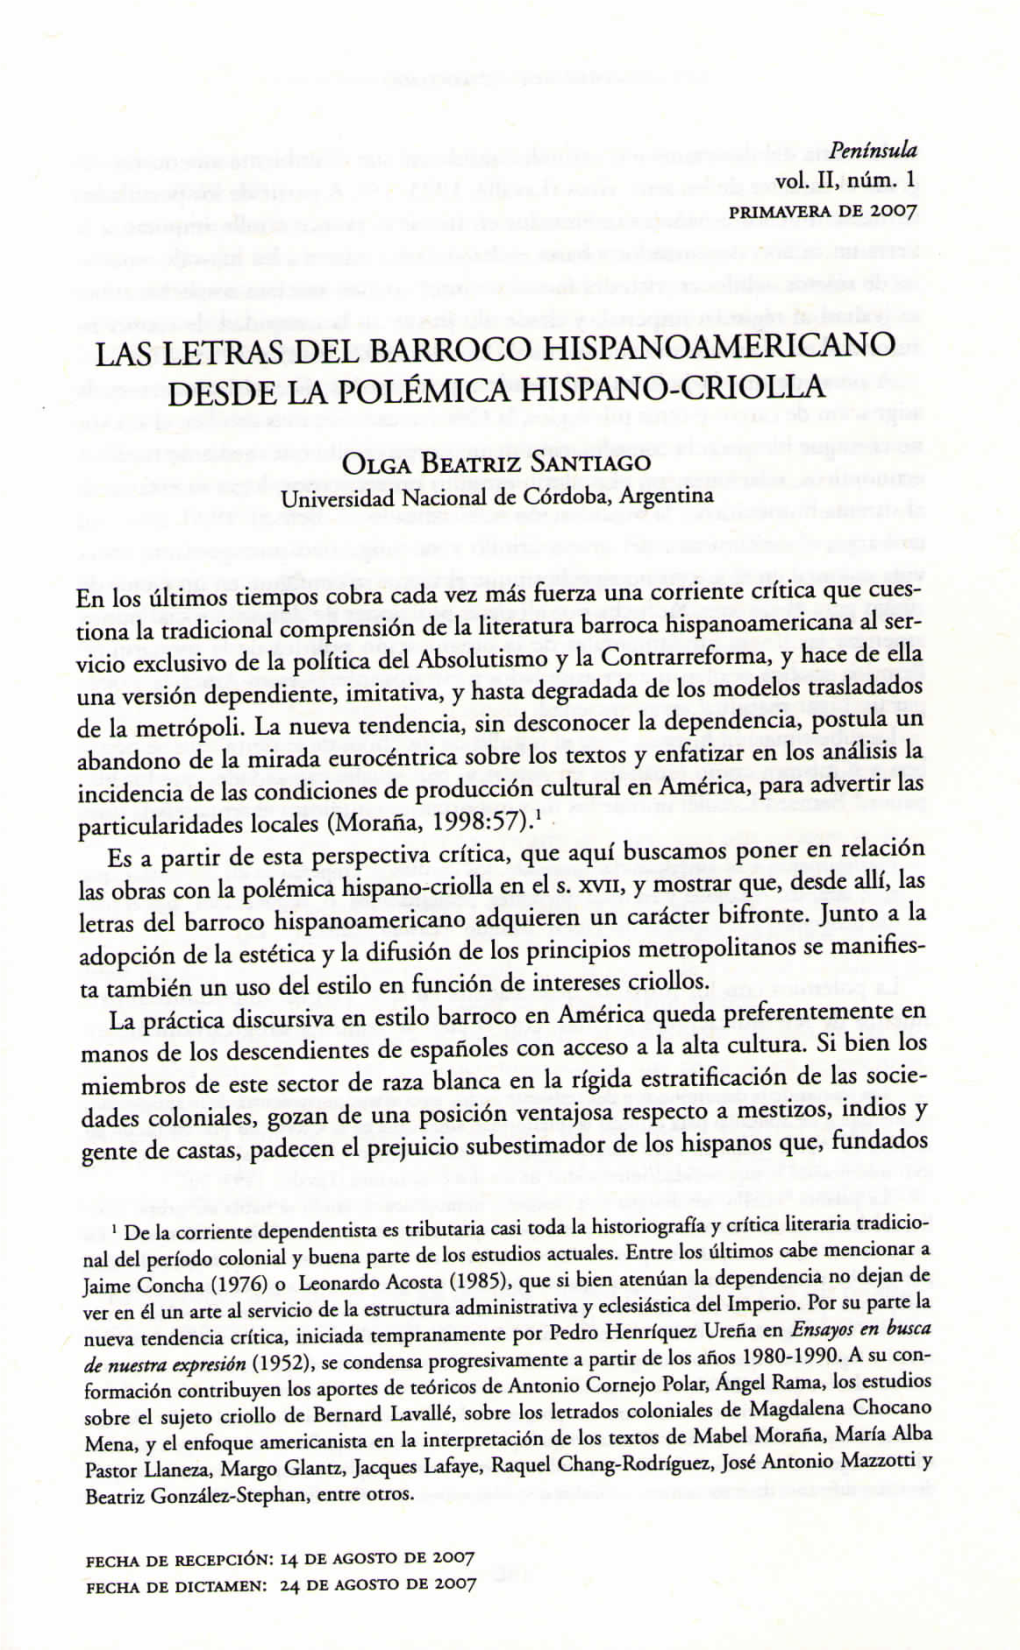 Las Letras Del Barroco Hispanoamericano Desde La Polémica Hispano-Criolla